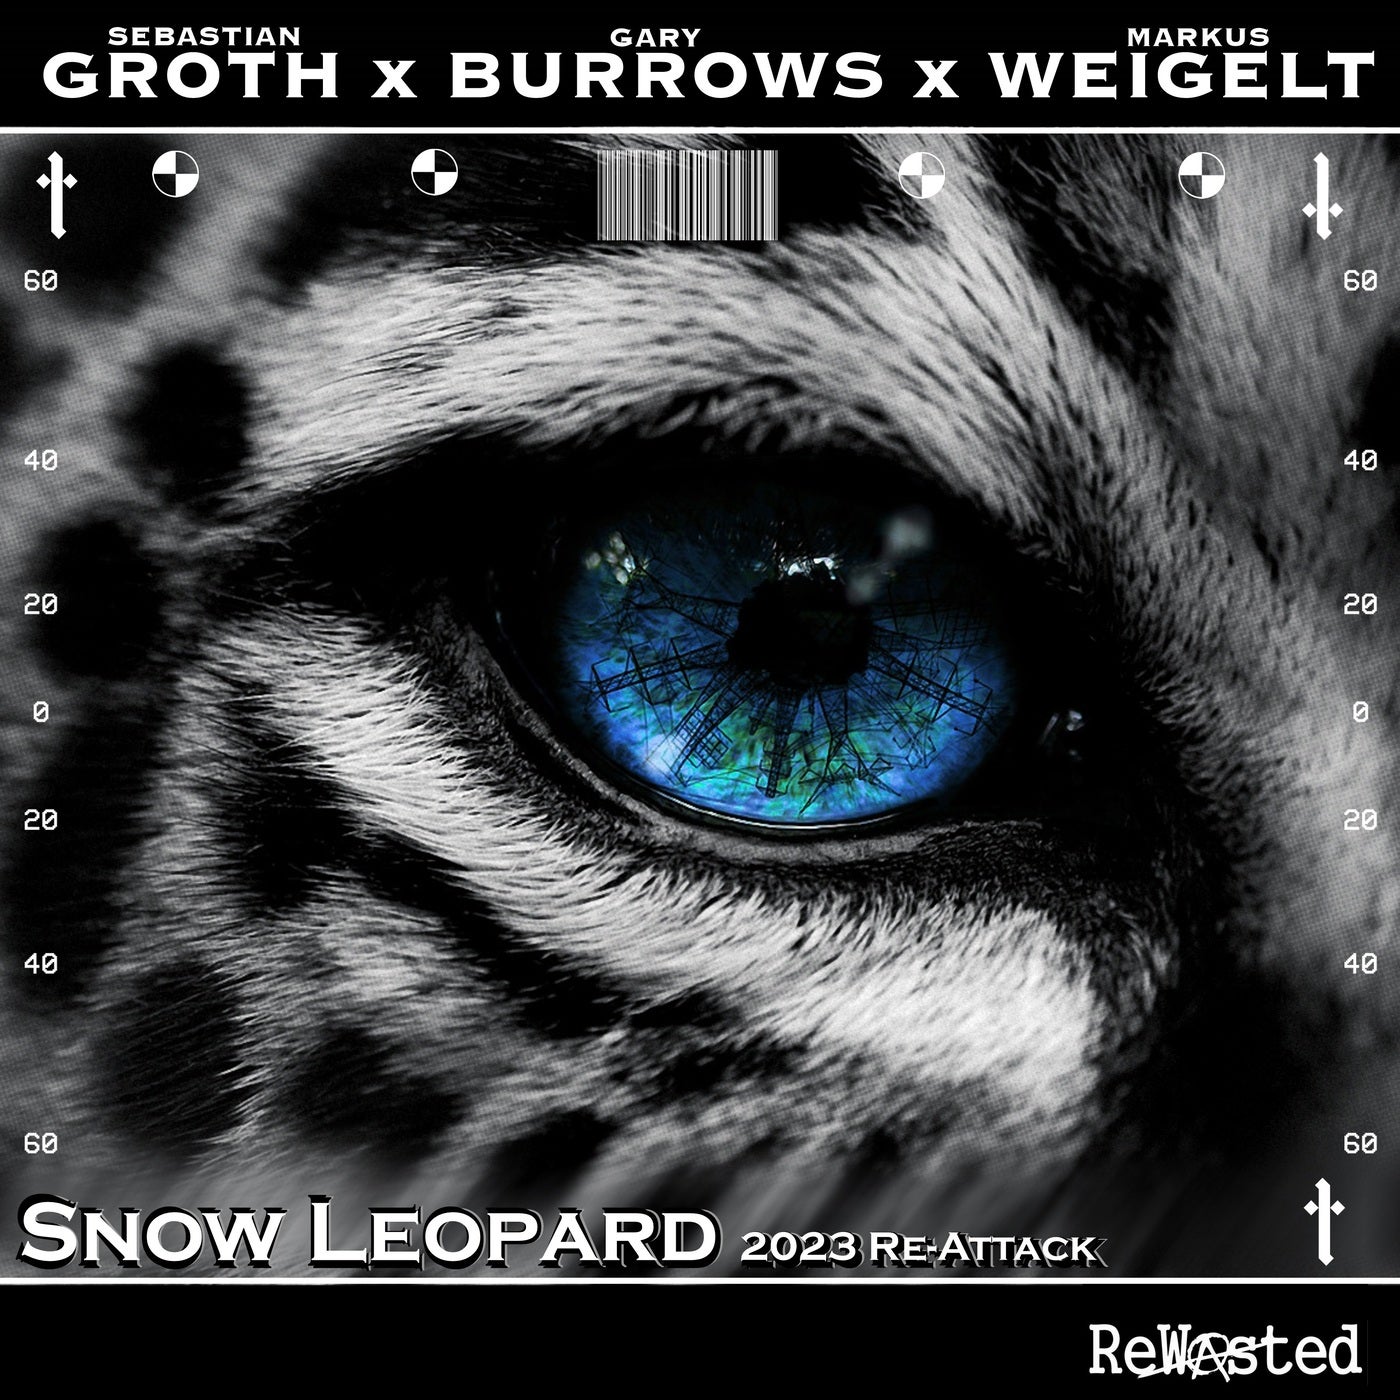 Snow Leopard - 2023 Re-Attack